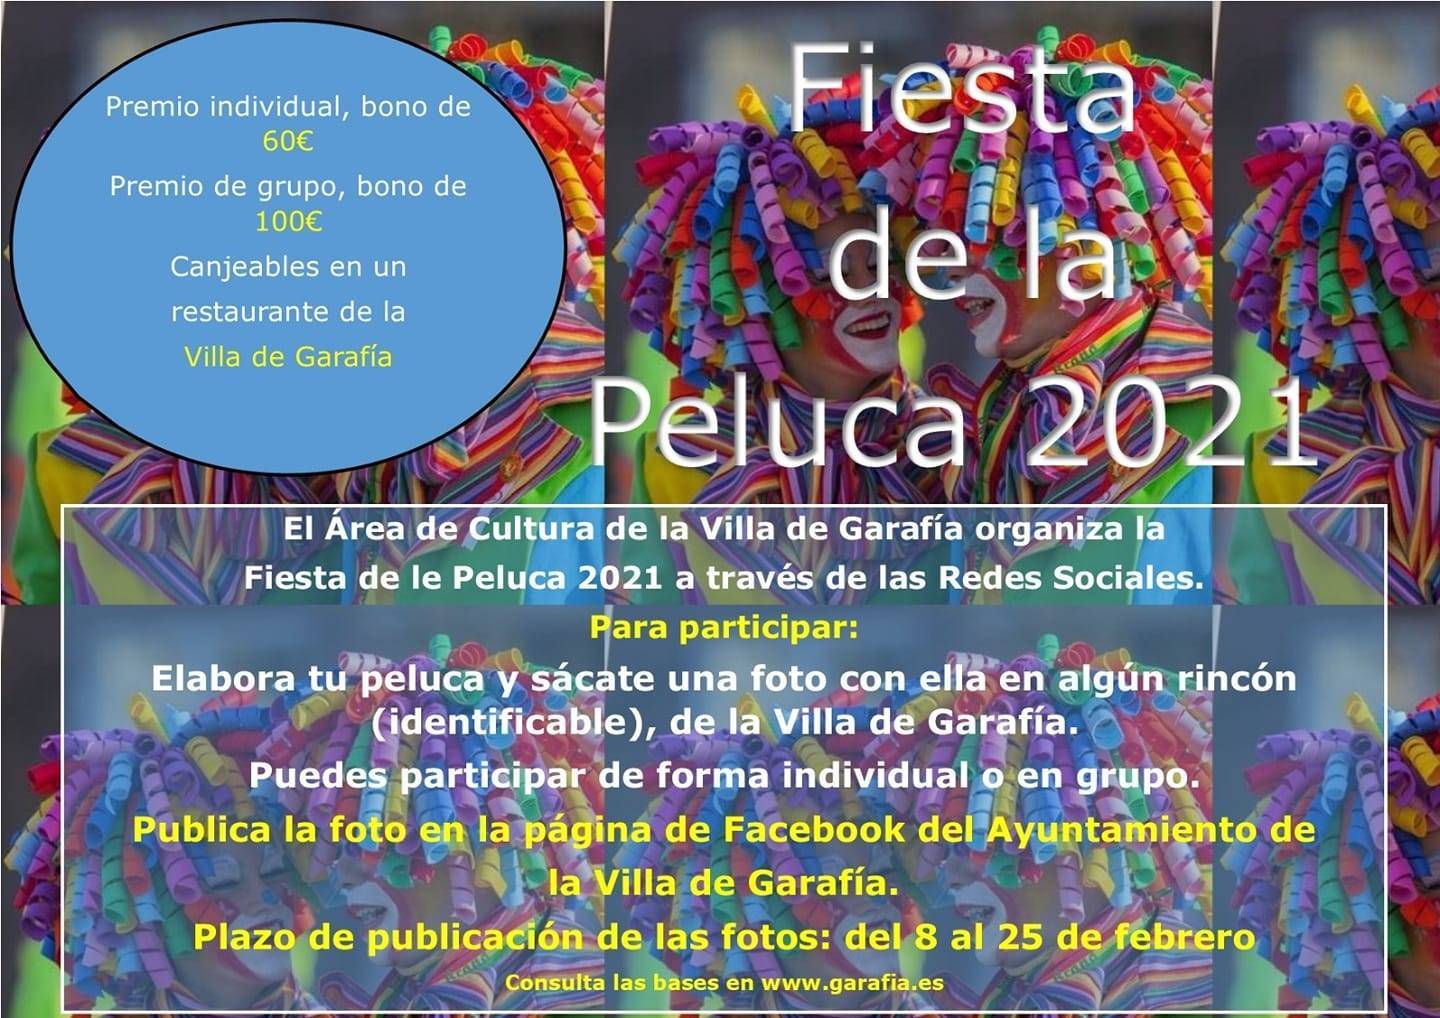 Fiesta de la peluca (2021) - Garafía (Santa Cruz de Tenerife)